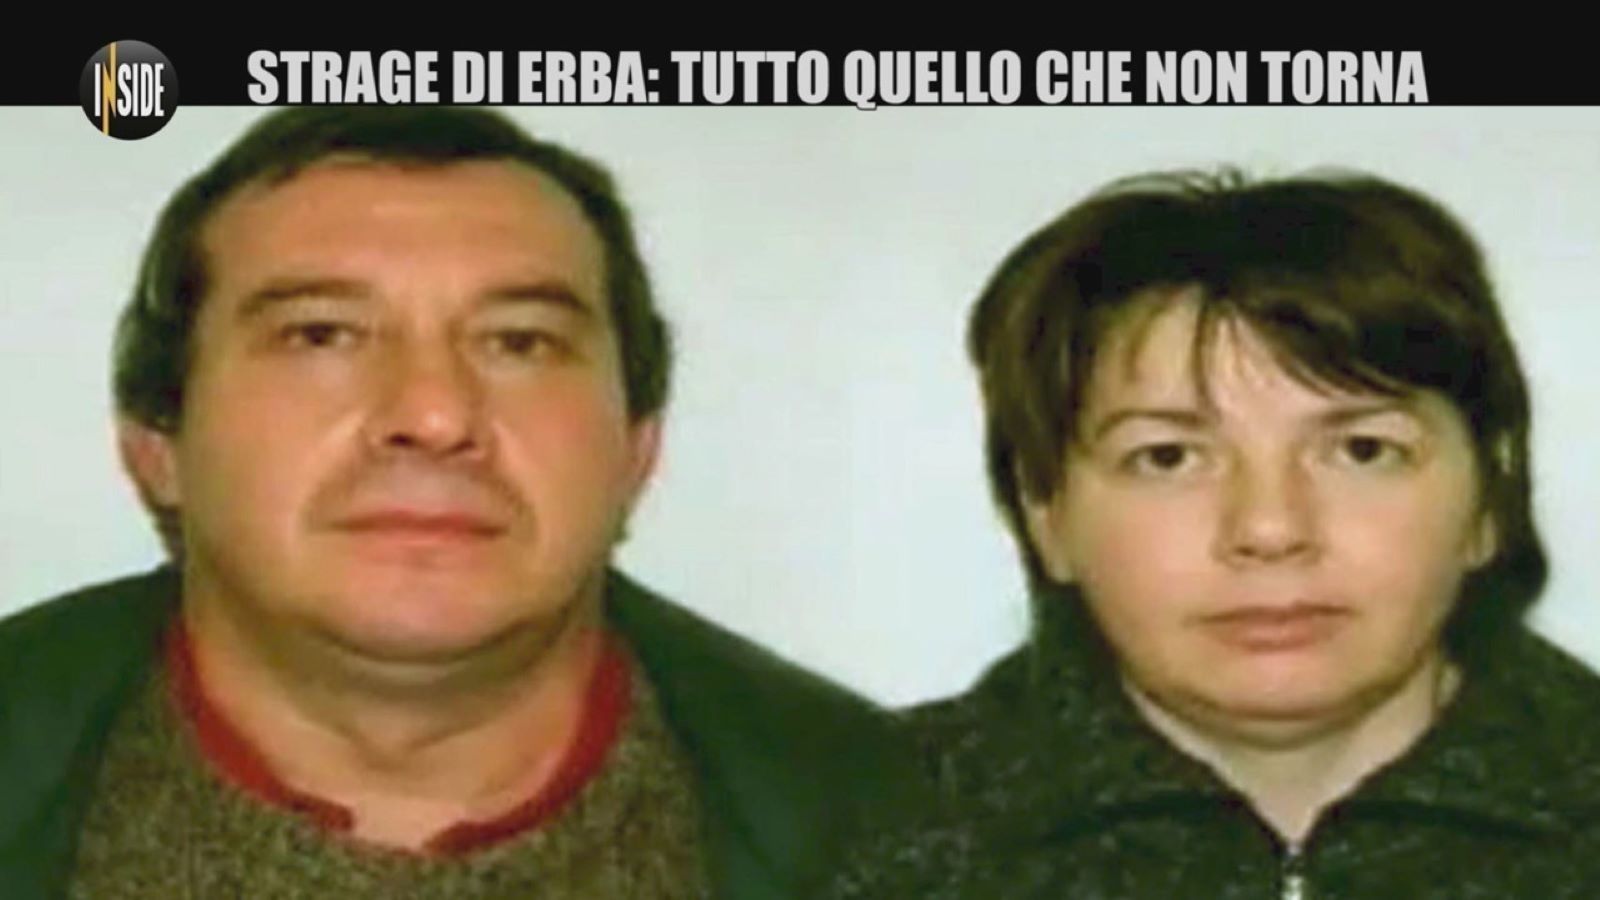 Le Iene presentano: Inside su Italia 1, anticipazioni di stasera: Un’altra verità per la strage di Erba